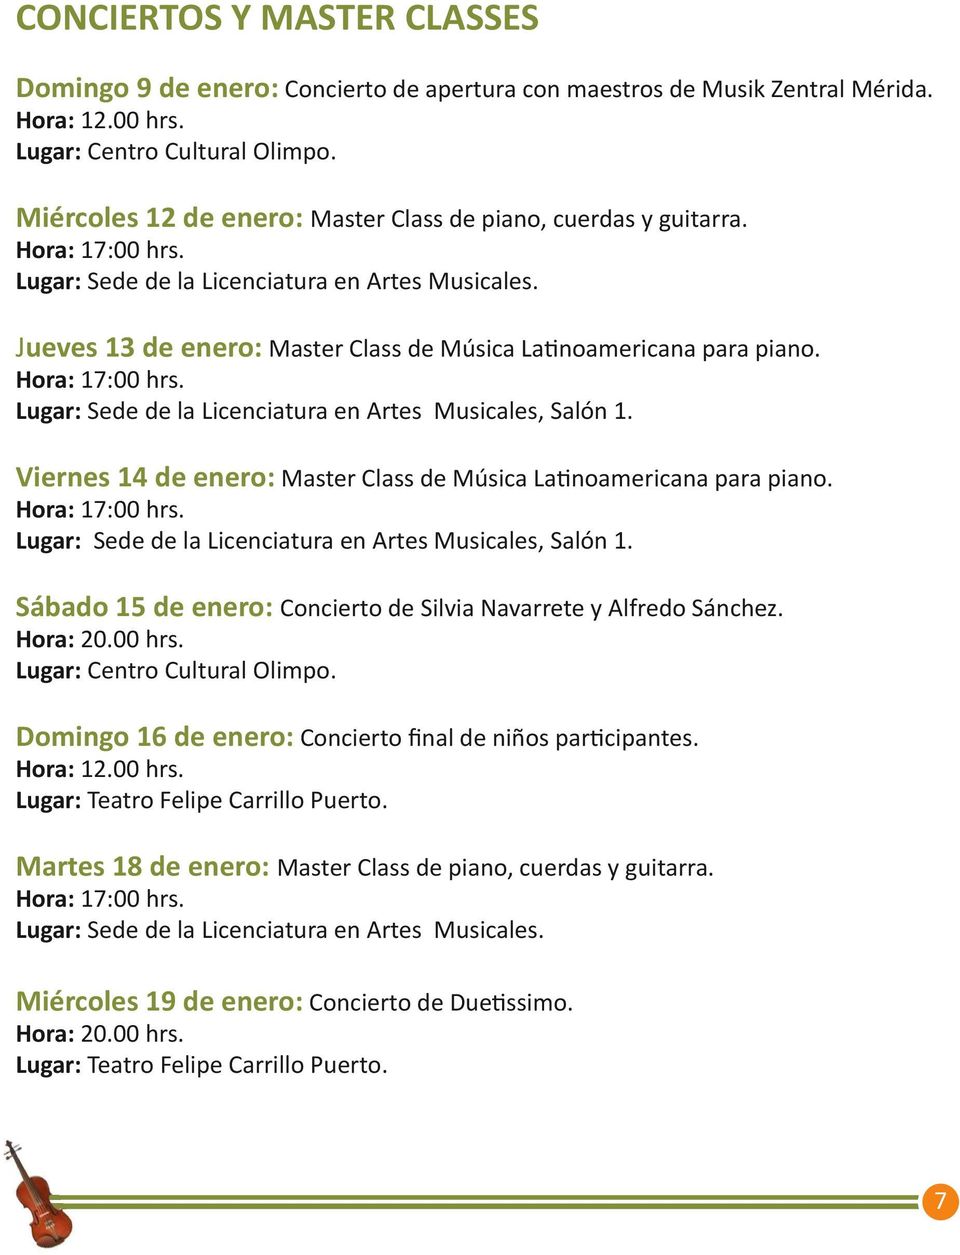 Jueves 13 de enero: Master Class de Música Latinoamericana para piano. Hora: 17:00 hrs. Lugar: Sede de la Licenciatura en Artes Musicales, Salón 1.